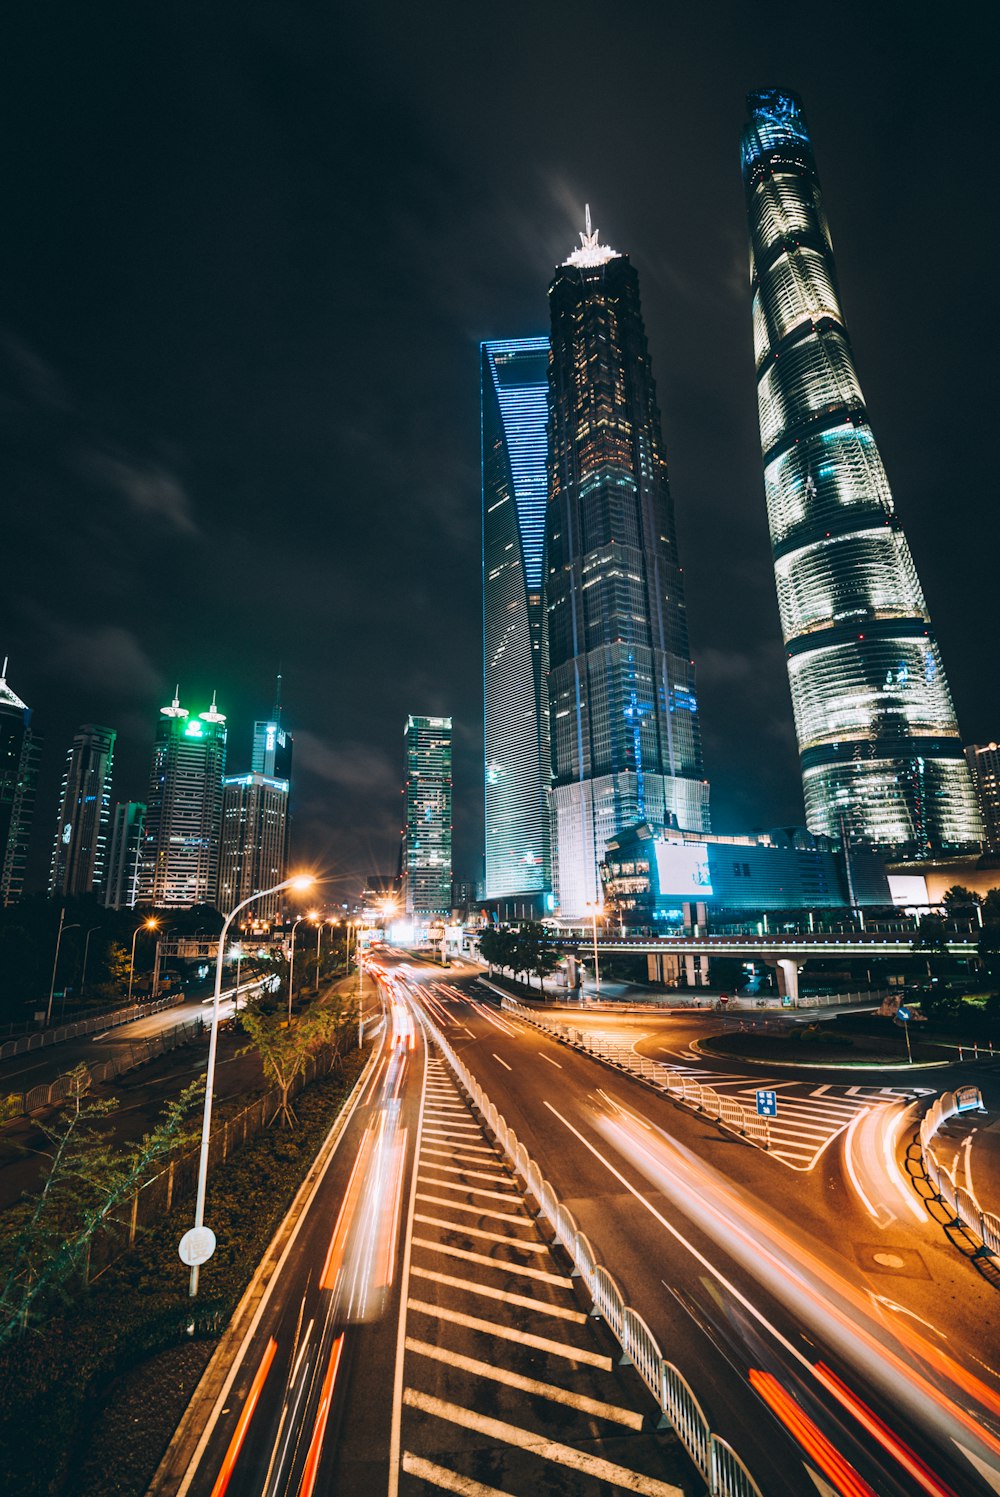 fotografia in lasso di tempo del World Trade Center di Shanghai